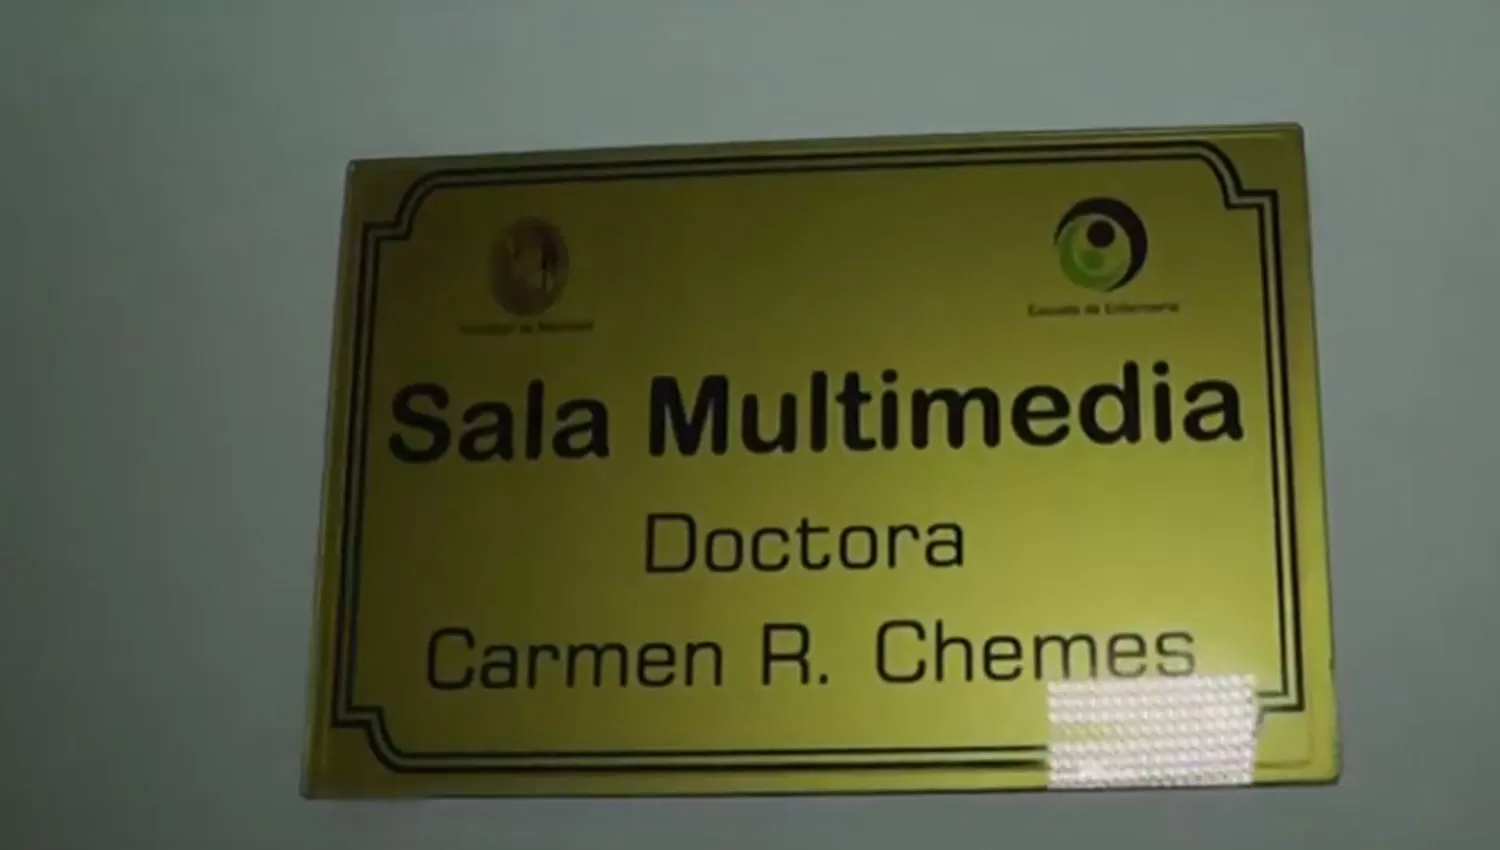 Inauguraron una sala multimedia en la Escuela de Enfermería de la UNT